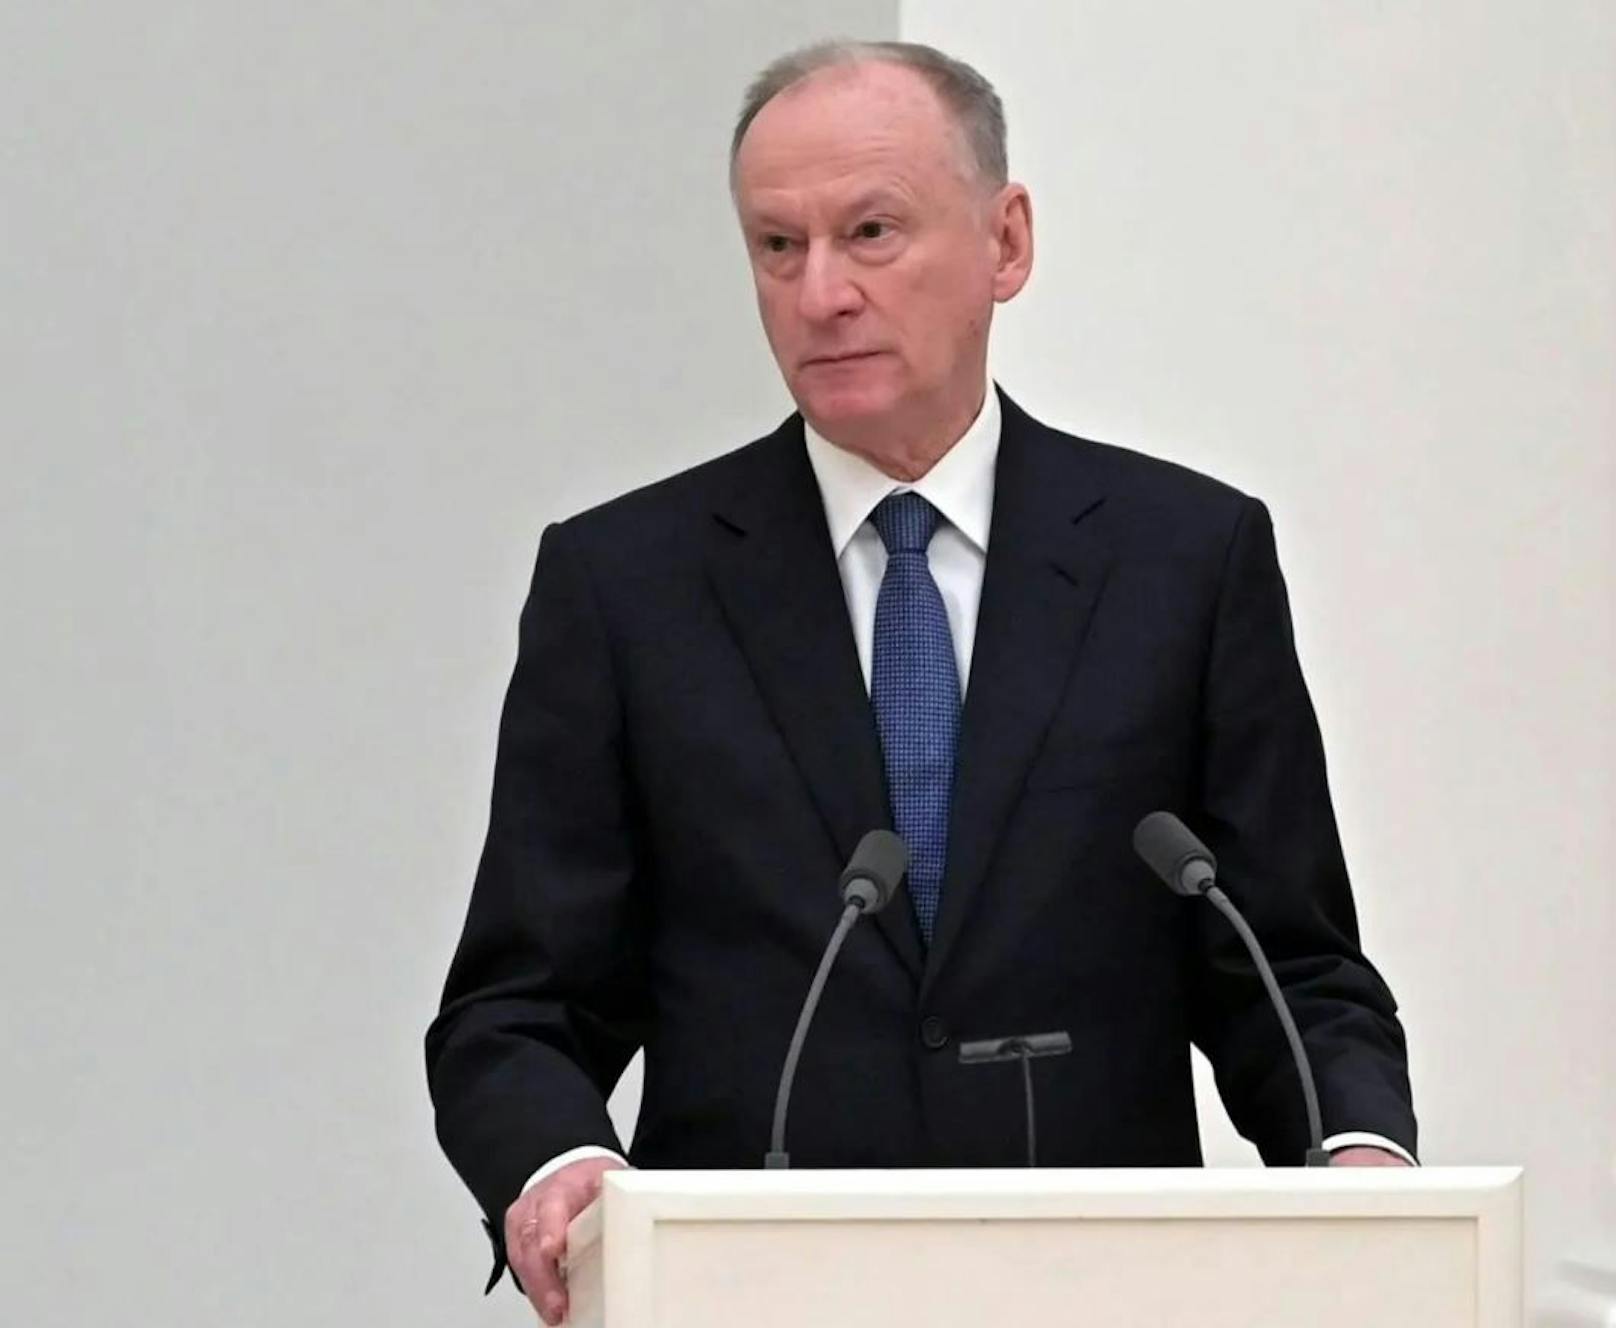 Der Hardliner unter den potenziellen Nachfolgern: Nikolai Platonowitsch Patruschew, Chef des russischen Sicherheitsrates. 